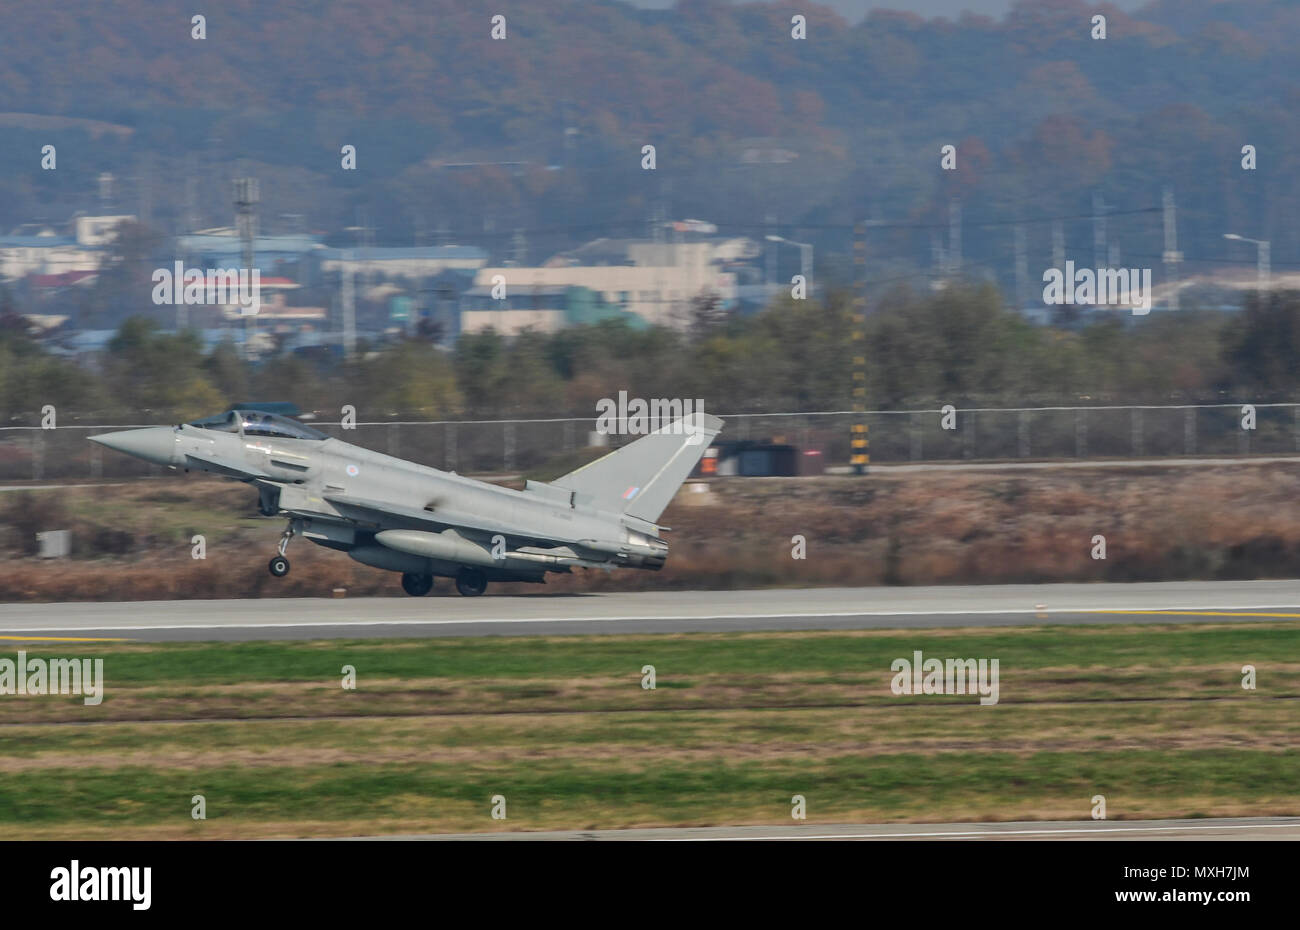 La Fuerza Aérea Real Eurofighter Typhoon FRG4, F-16 de la Fuerza Aérea de EE.UU. lucha Falcón, y la República de Corea, la fuerza aérea F-16 y F-15K Slam Eagle volar en formación durante el escudo invencible en la base aérea de Osan, República de Corea, el 8 de noviembre, 2016. La intención del escudo invencible es fomentar la interoperabilidad entre la República de Corea, los Estados Unidos y Reino Unido, mientras que la mejora de la capacidad de combate en la región del Pacífico. (Ee.Uu. Foto de la fuerza aérea por Tech. El Sgt. Douglas Rasheen) Foto de stock